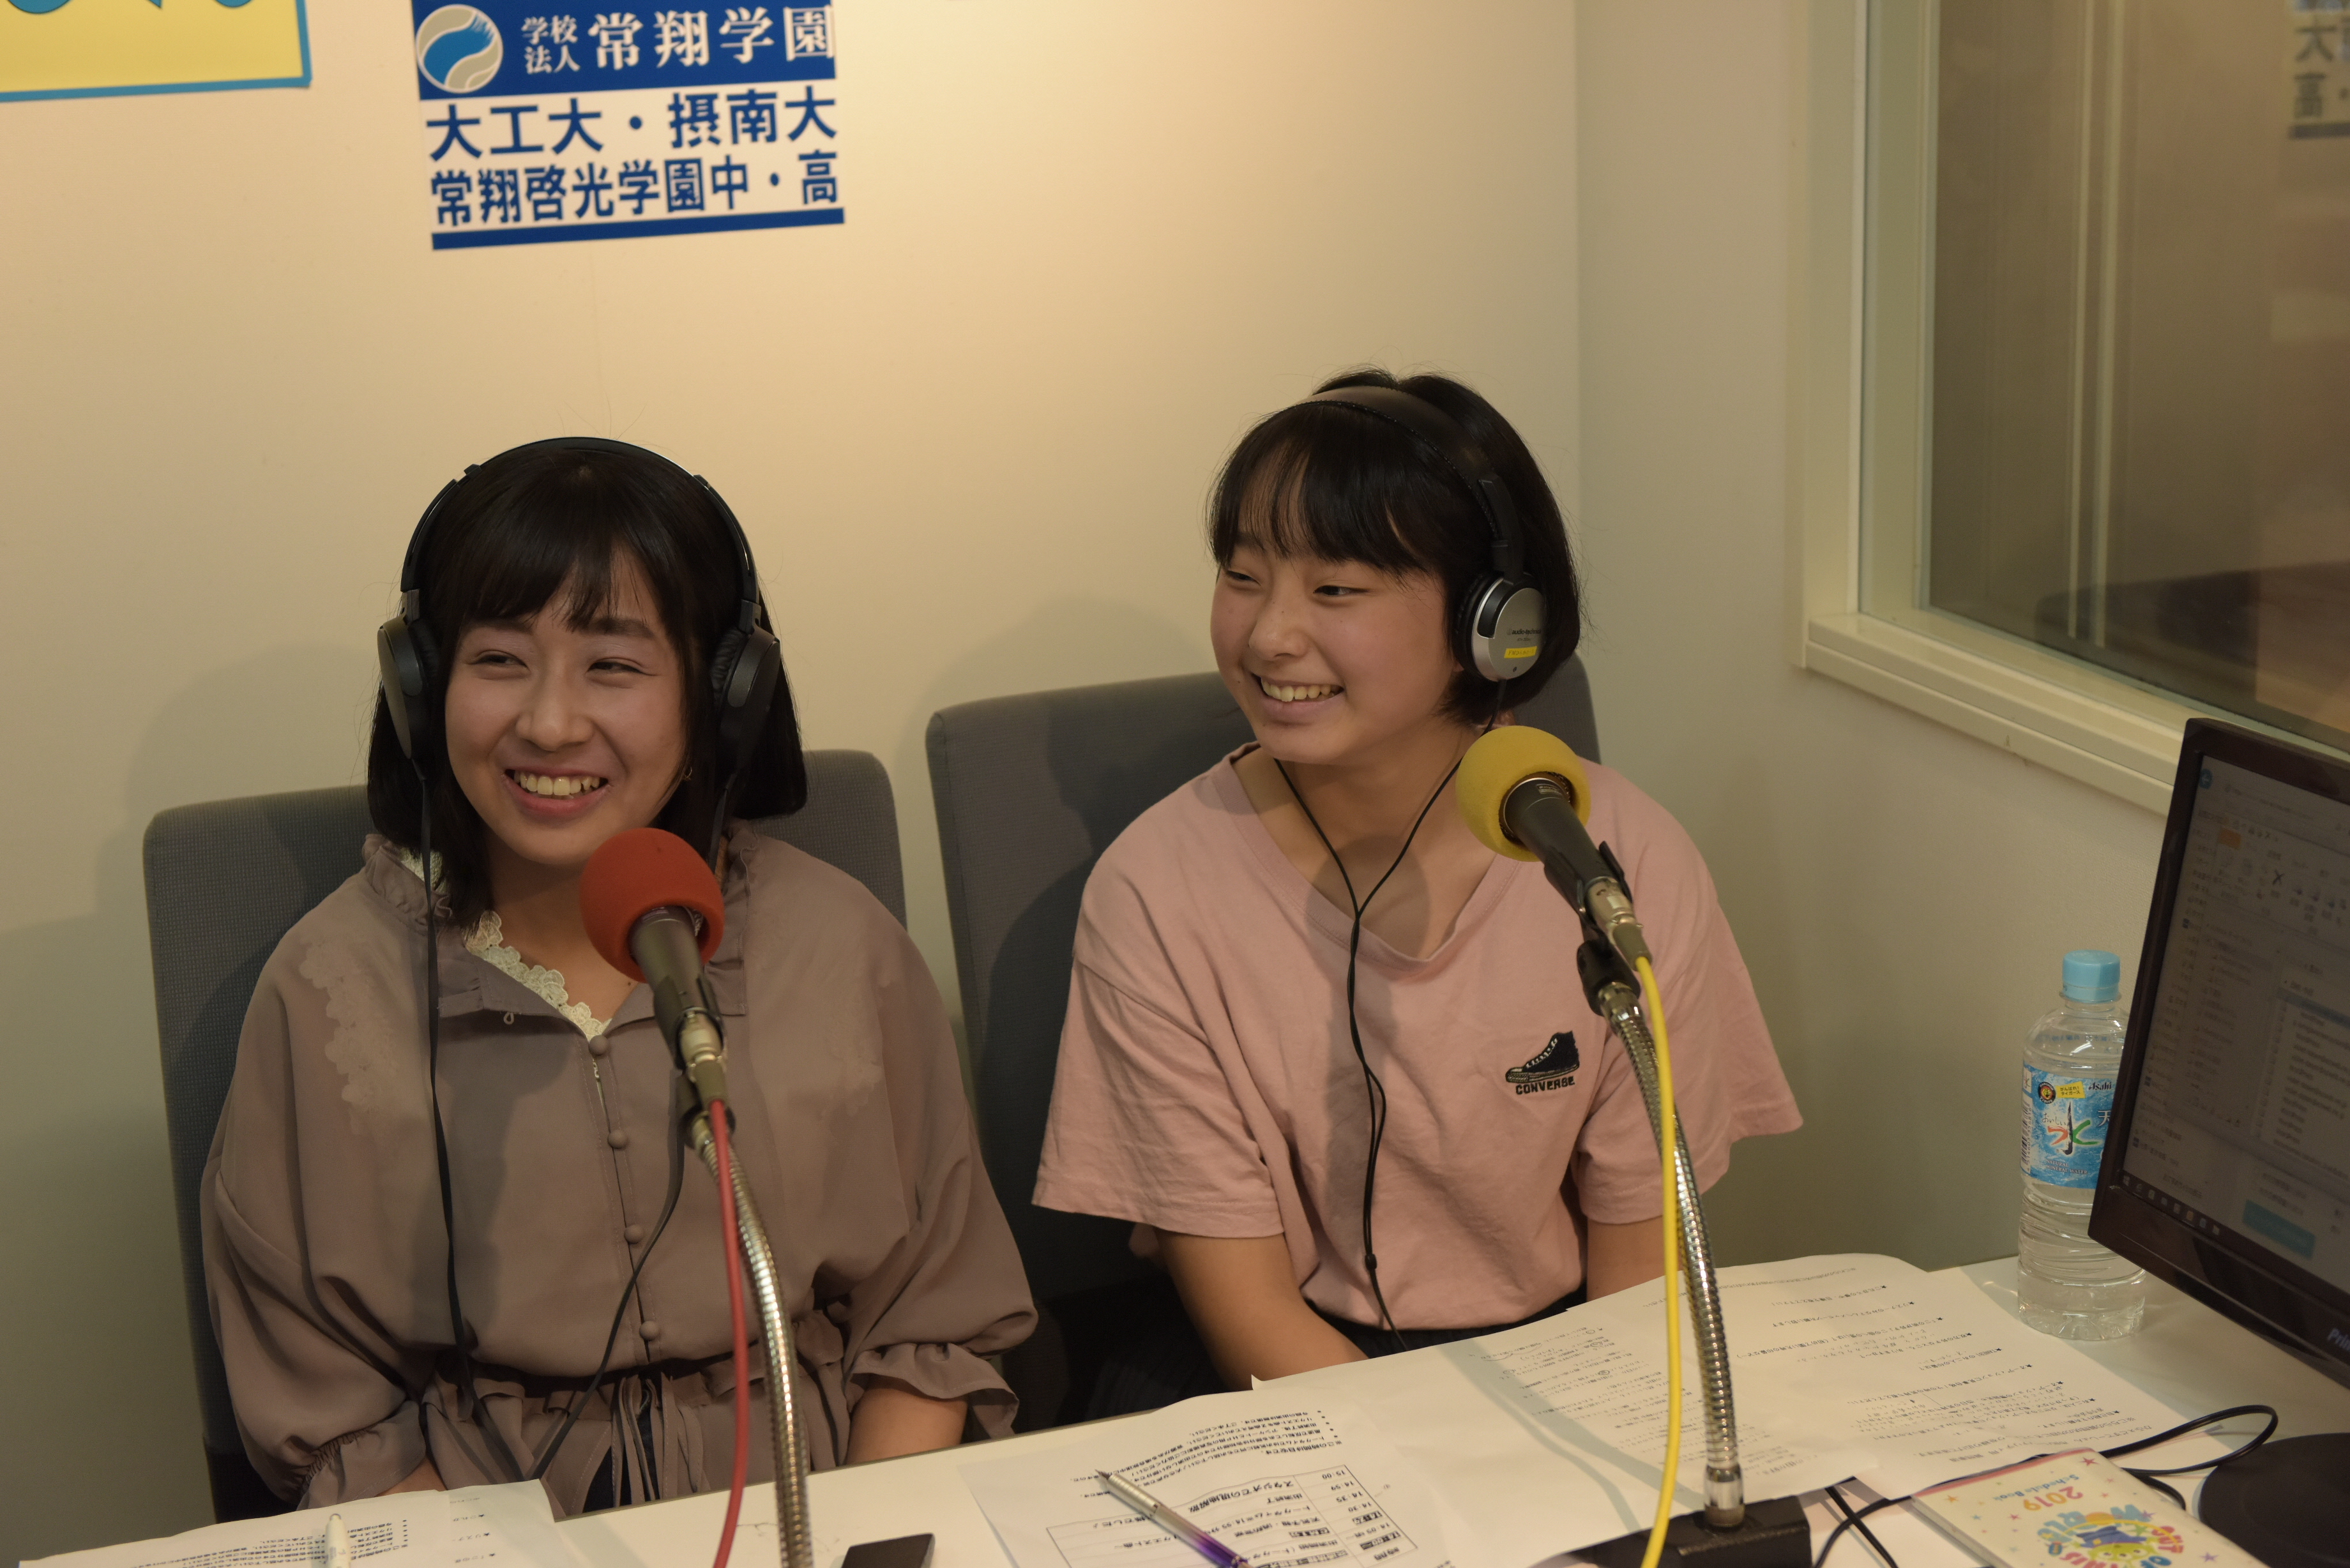 ラジオで喋る女性2名の写真